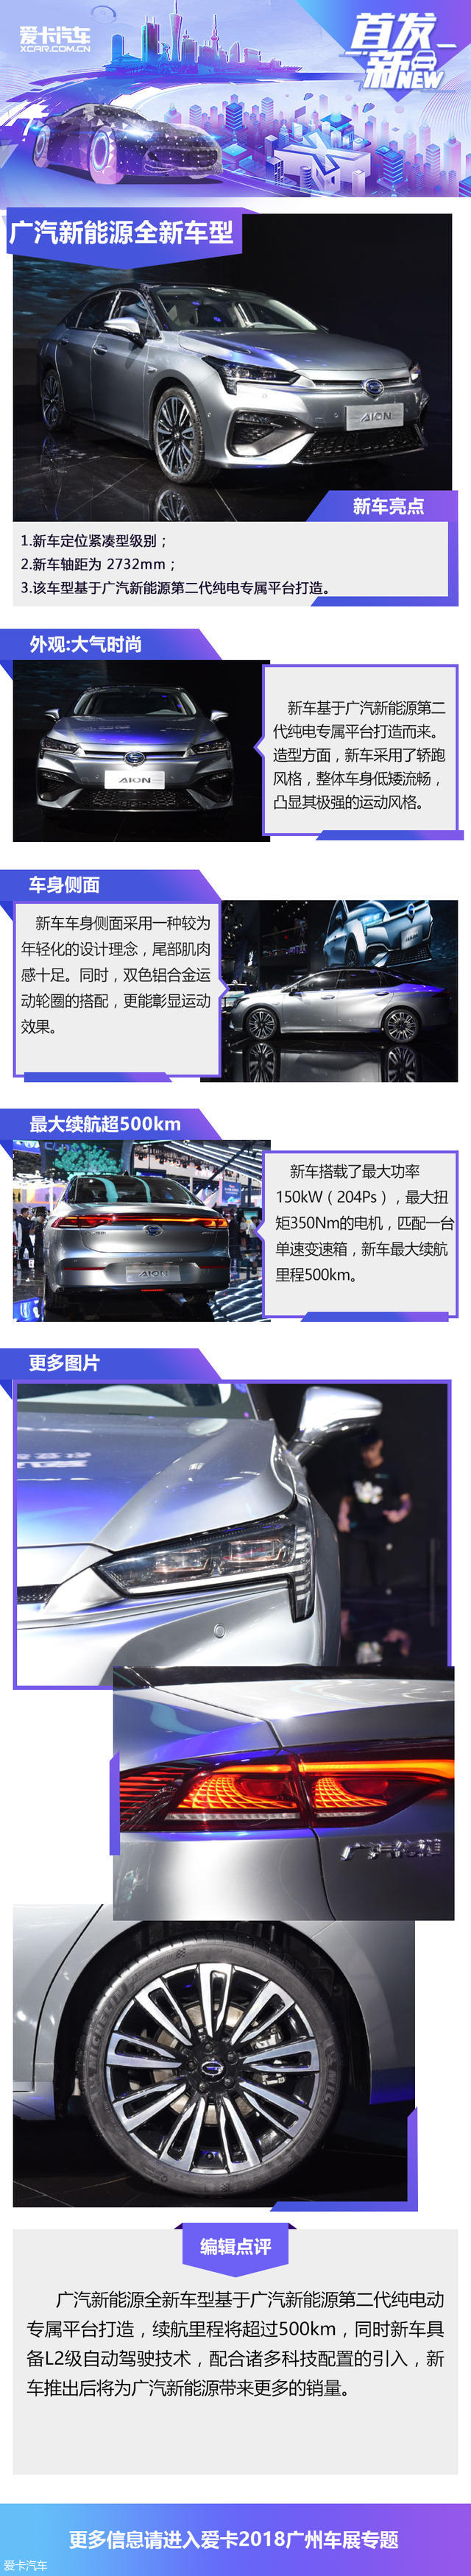 广汽新能源AION S发布 定位纯电动车型